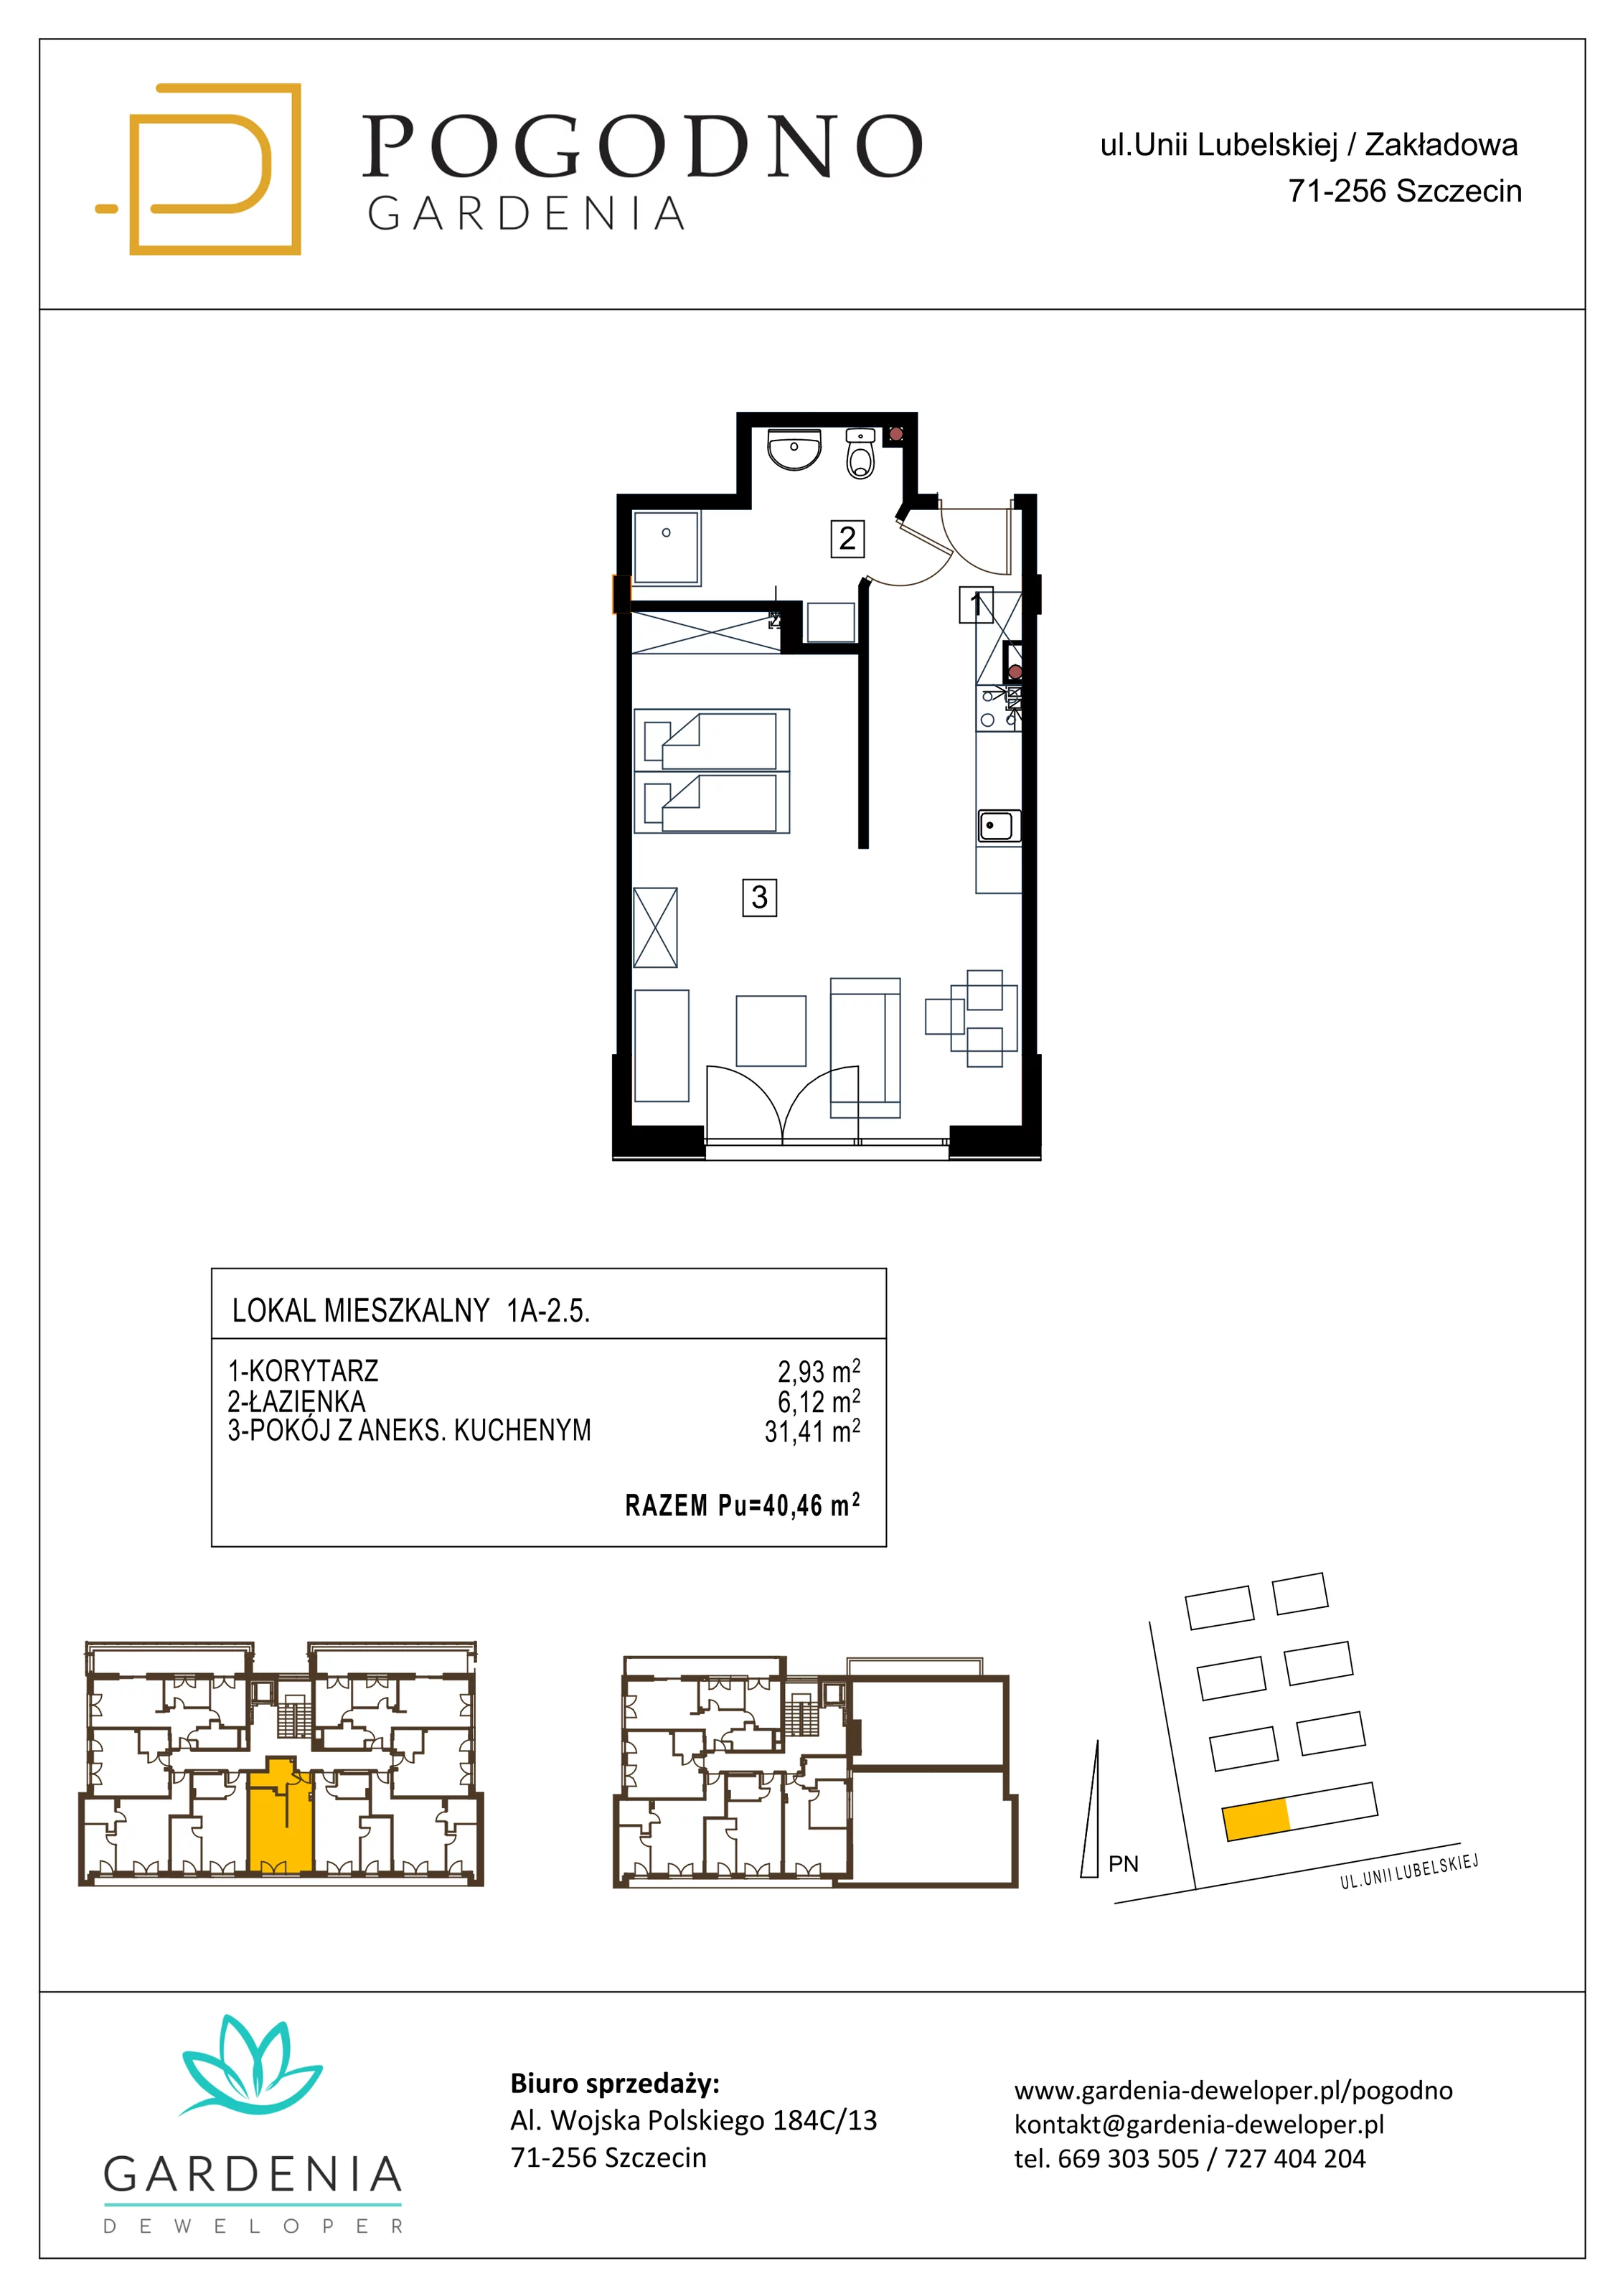 Mieszkanie 40,46 m², piętro 2, oferta nr 1A-2-5, Gardenia Pogodno, Szczecin, Zachód, Pogodno, ul. Unii Lubelskiej